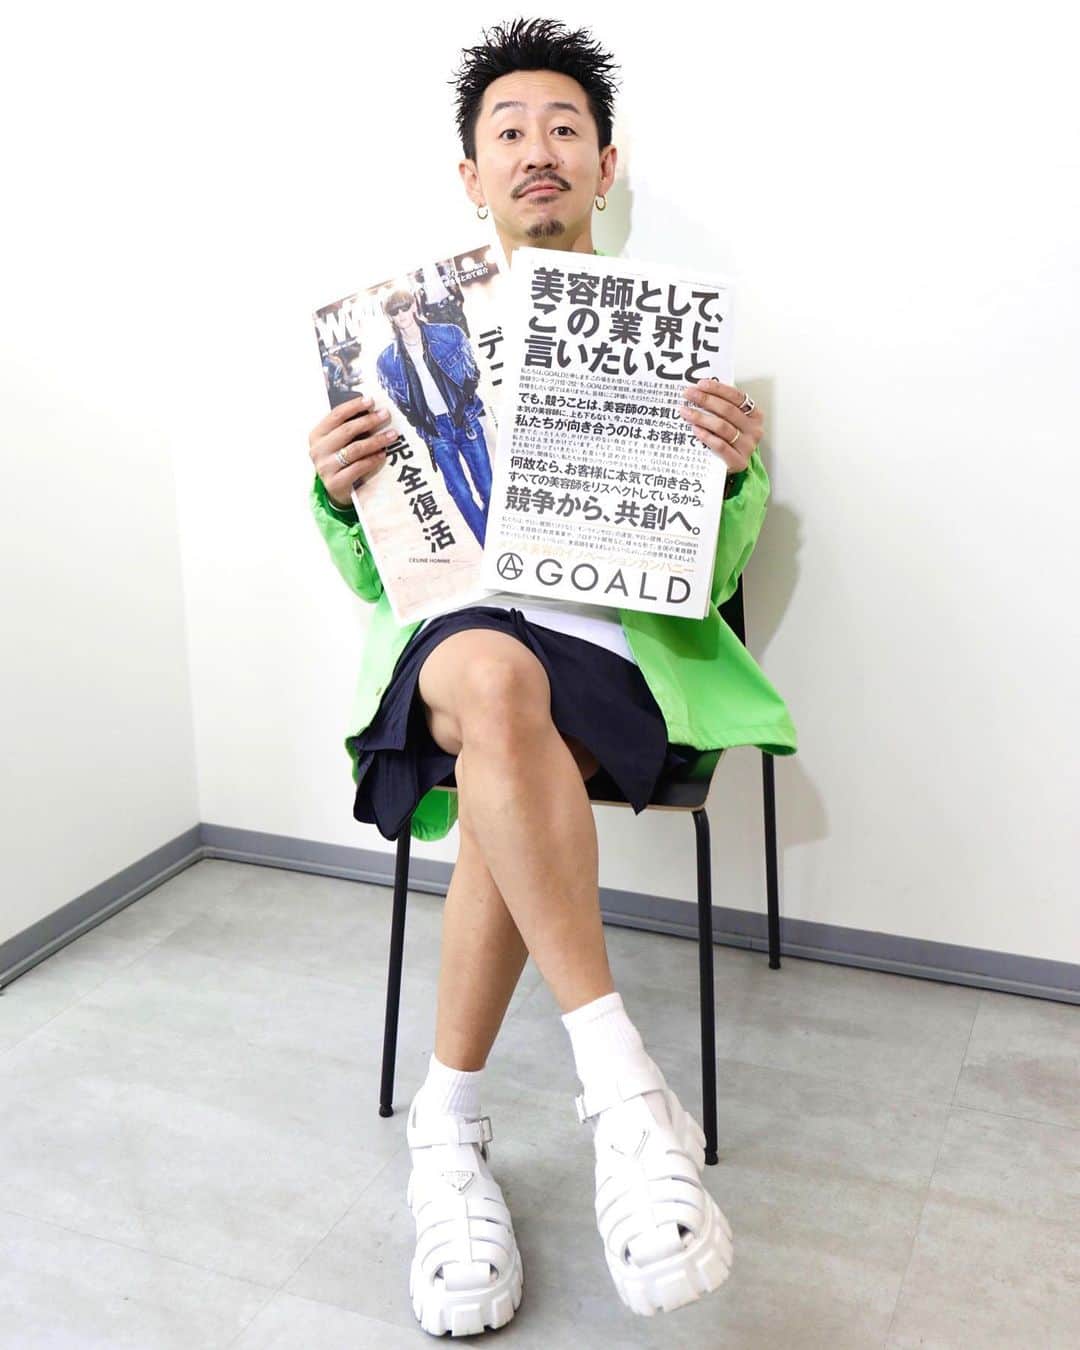 中村トメ吉さんのインスタグラム写真 - (中村トメ吉Instagram)「【美容師共創宣言】 ⁡ 宣言であり、宣戦布告。 ⁡ はっきり言って全員に理解、共感して欲しいと思ってわざわざWWD様の1ページでこの様な表現はしません。  この様な前代未聞なわがままを受け入れて下さったWWD様ありがとうございます🙇‍♂️ ⁡ 美容室OCEAN TOKYOを立ち上げ 社長を退任し、再びGOALDを立ち上げた 私だからこそ言える事、伝えていける事があります。 この表現をする決意と覚悟を持てたのは 今自分に関わる全ての方々のお陰です。 そして己が描く業界の未来に確信があるからです。 ⁡ この言葉を一生背負い、責任を持つ覚悟で 今後の人生を生きていきます。 ⁡ 美容室は店舗ビジネスであり労働集約型産業。 だからこそ当たり前に起きてしまう 呪縛があると思います。 ⁡ 先代の方々のやり方が古いとか Z世代が考え方が新しいとか 誰が正しくて誰が間違ってるとか、 別に誰に責任があるわけでもありません。 誰もが一生懸命にやってきた事実に、正解も不正解もないのです。 この業態でありビジネスモデルであるからこそ、必ず起きる現実なのです。 ⁡ なぜこの様な業界に、 状況になってしまっているのか？ なぜ社会的に美容師は3Bと呼ばれ 地位が低いのか？  そこに本気で向き合ってきました。 ⁡ 低価格サロンやブランドサロン。 地方サロンや都心サロン。 シェアサロンや完全雇用サロン。 BtoBやその他事業を行うサロン。 ⁡ この分断について、争う必要はありますか？ それぞれ保身的になり、己の正解や本質を主張し合い、他者や他業態を批判したり否定する必要はありますか？ そこに上下は存在するのでしょうか？ ⁡ 様々な在り方や、やり方が成り立つ理由は そこに美容師、お客様のニーズが存在するから。 そこに、それぞれの価値や豊かさが存在するから。 ⁡ これ以外に理由はありません。 ⁡ 時代によって、戦い方や勝ち方は変わります。 ⁡ しかし普遍的に変わらない美容師、美容室の目的は技術や接客、サービスを通して ⁡ 【お客様を美しくする事】 【お客様のライフスタイル豊かにする事】 ⁡ これは時代関係なく美容師の変わらない在り方であり使命ではないでしょうか？ ⁡ フォロワーをお金で買ったり、利己的な発信を続け、お客様やモデルを巻き込んでまで、自社や自分のブランディングをしたり。 自分が切ったモデルでもないのに、 あたかも自分がやったみたいに世間に嘘をついて集客を狙ったり。 お客様に嘘の情報をばらまいてまで単価をあげたり。 リアルな価値とSNS上の表面的価値のギャップが広がりお客様を迷わせ。 売り上げや利益、会社の都合で社員を動かし、自由を奪い。 辞めた人を悪く言い、辞めた人は過去を語る事も、大切にしてきたお客様に報告することも許されなかったり。 ディーラーやメーカー様に偉そうにマウントをとったり。 表面的な集客、求人広告に溢れ。 ⁡ 言い出したらきりがないくらい、 くだらないんです。 ⁡ はっきり言って やってる事がダサいんですよ。 この美容業界は。 だからこそ他業界に軽視されるんです。 ⁡ そこに私達の承認欲求を満たす必要があるのか？ 【美しくする仕事】の私たちが 醜くある必要があるのか？ ⁡ 世界にたった1人のかけがえのない、大切なお客様にとってそれは意味ある事なのでしょうか？ ⁡ あくまでも美容師はお客様がいてくださる事で成り立つ職業。 私達の存在意義はお客様いてくださって、 はじめて成り立つのです。 ⁡ 美容室25万件 美容師50万人 ⁡ 今の現実は 業界内での他社との比較、差別化、競争、目的だけに、こだわり続けた結果ではないでしょうか？ ⁡ 美容師、美容室という手段を通して どう社会に挑戦し、貢献するか？ ⁡ ここに目的を置き、こだわるべきだと私はおもいます。 ⁡ 私も美容師、美容室の経営を選んだ事、知れば知るほど不安に陥る産業だと気づかされました。 ⁡ 皆様もふとした瞬間に本当はそう思ってませんか？ ⁡ 【競争から、共創へ】 ⁡ まだ浅いメンズ美容業界だからこそ、時代を繰り返す事なくまた1から業界に対して新しい在り方を提示出来ると信じております。 ⁡ 良い技術や教育。 良い戦略や戦術。 良い商品も場もシェアしましょう。 先ず私たちから、そうします。 価値を独占することなく、 美容師みんなが、美容室すべてが お客様の為に価値を向上すべきではないでしょうか？ ⁡ そして美容師、美容室経営者様の 不安と安心を。楽しさも苦しさも。 未来の希望もワクワクもシェアしましょう。 ⁡ お客様を輝かせる仕事であり、幸せにする仕事だからこそ私たちが輝き、幸せであるべきなのです。 ⁡ そんな目に見えないものも、可視化出来ないものもお客様の為に共創していきませんか？！ ⁡ 【あなた以上に、あなたを想う】 ⁡ 私たちはお客様にとって必ずそう在るべきでありたいと心から思います。 ⁡ 自由に生きてきた私たちを輝かせてくれた仕事、存在意義を与えてくれた仕事 【美容師】 美容師全員が社会に向けて誇れる、 大切な人に胸を張って、 語れる職業に私は皆様としたいです。 未来に希望があり、ワクワクする日々を送れる職業に私は皆様としたいです。 ⁡ GOALD代表取締役 中村トメ吉」7月20日 19時52分 - tomekichi1102